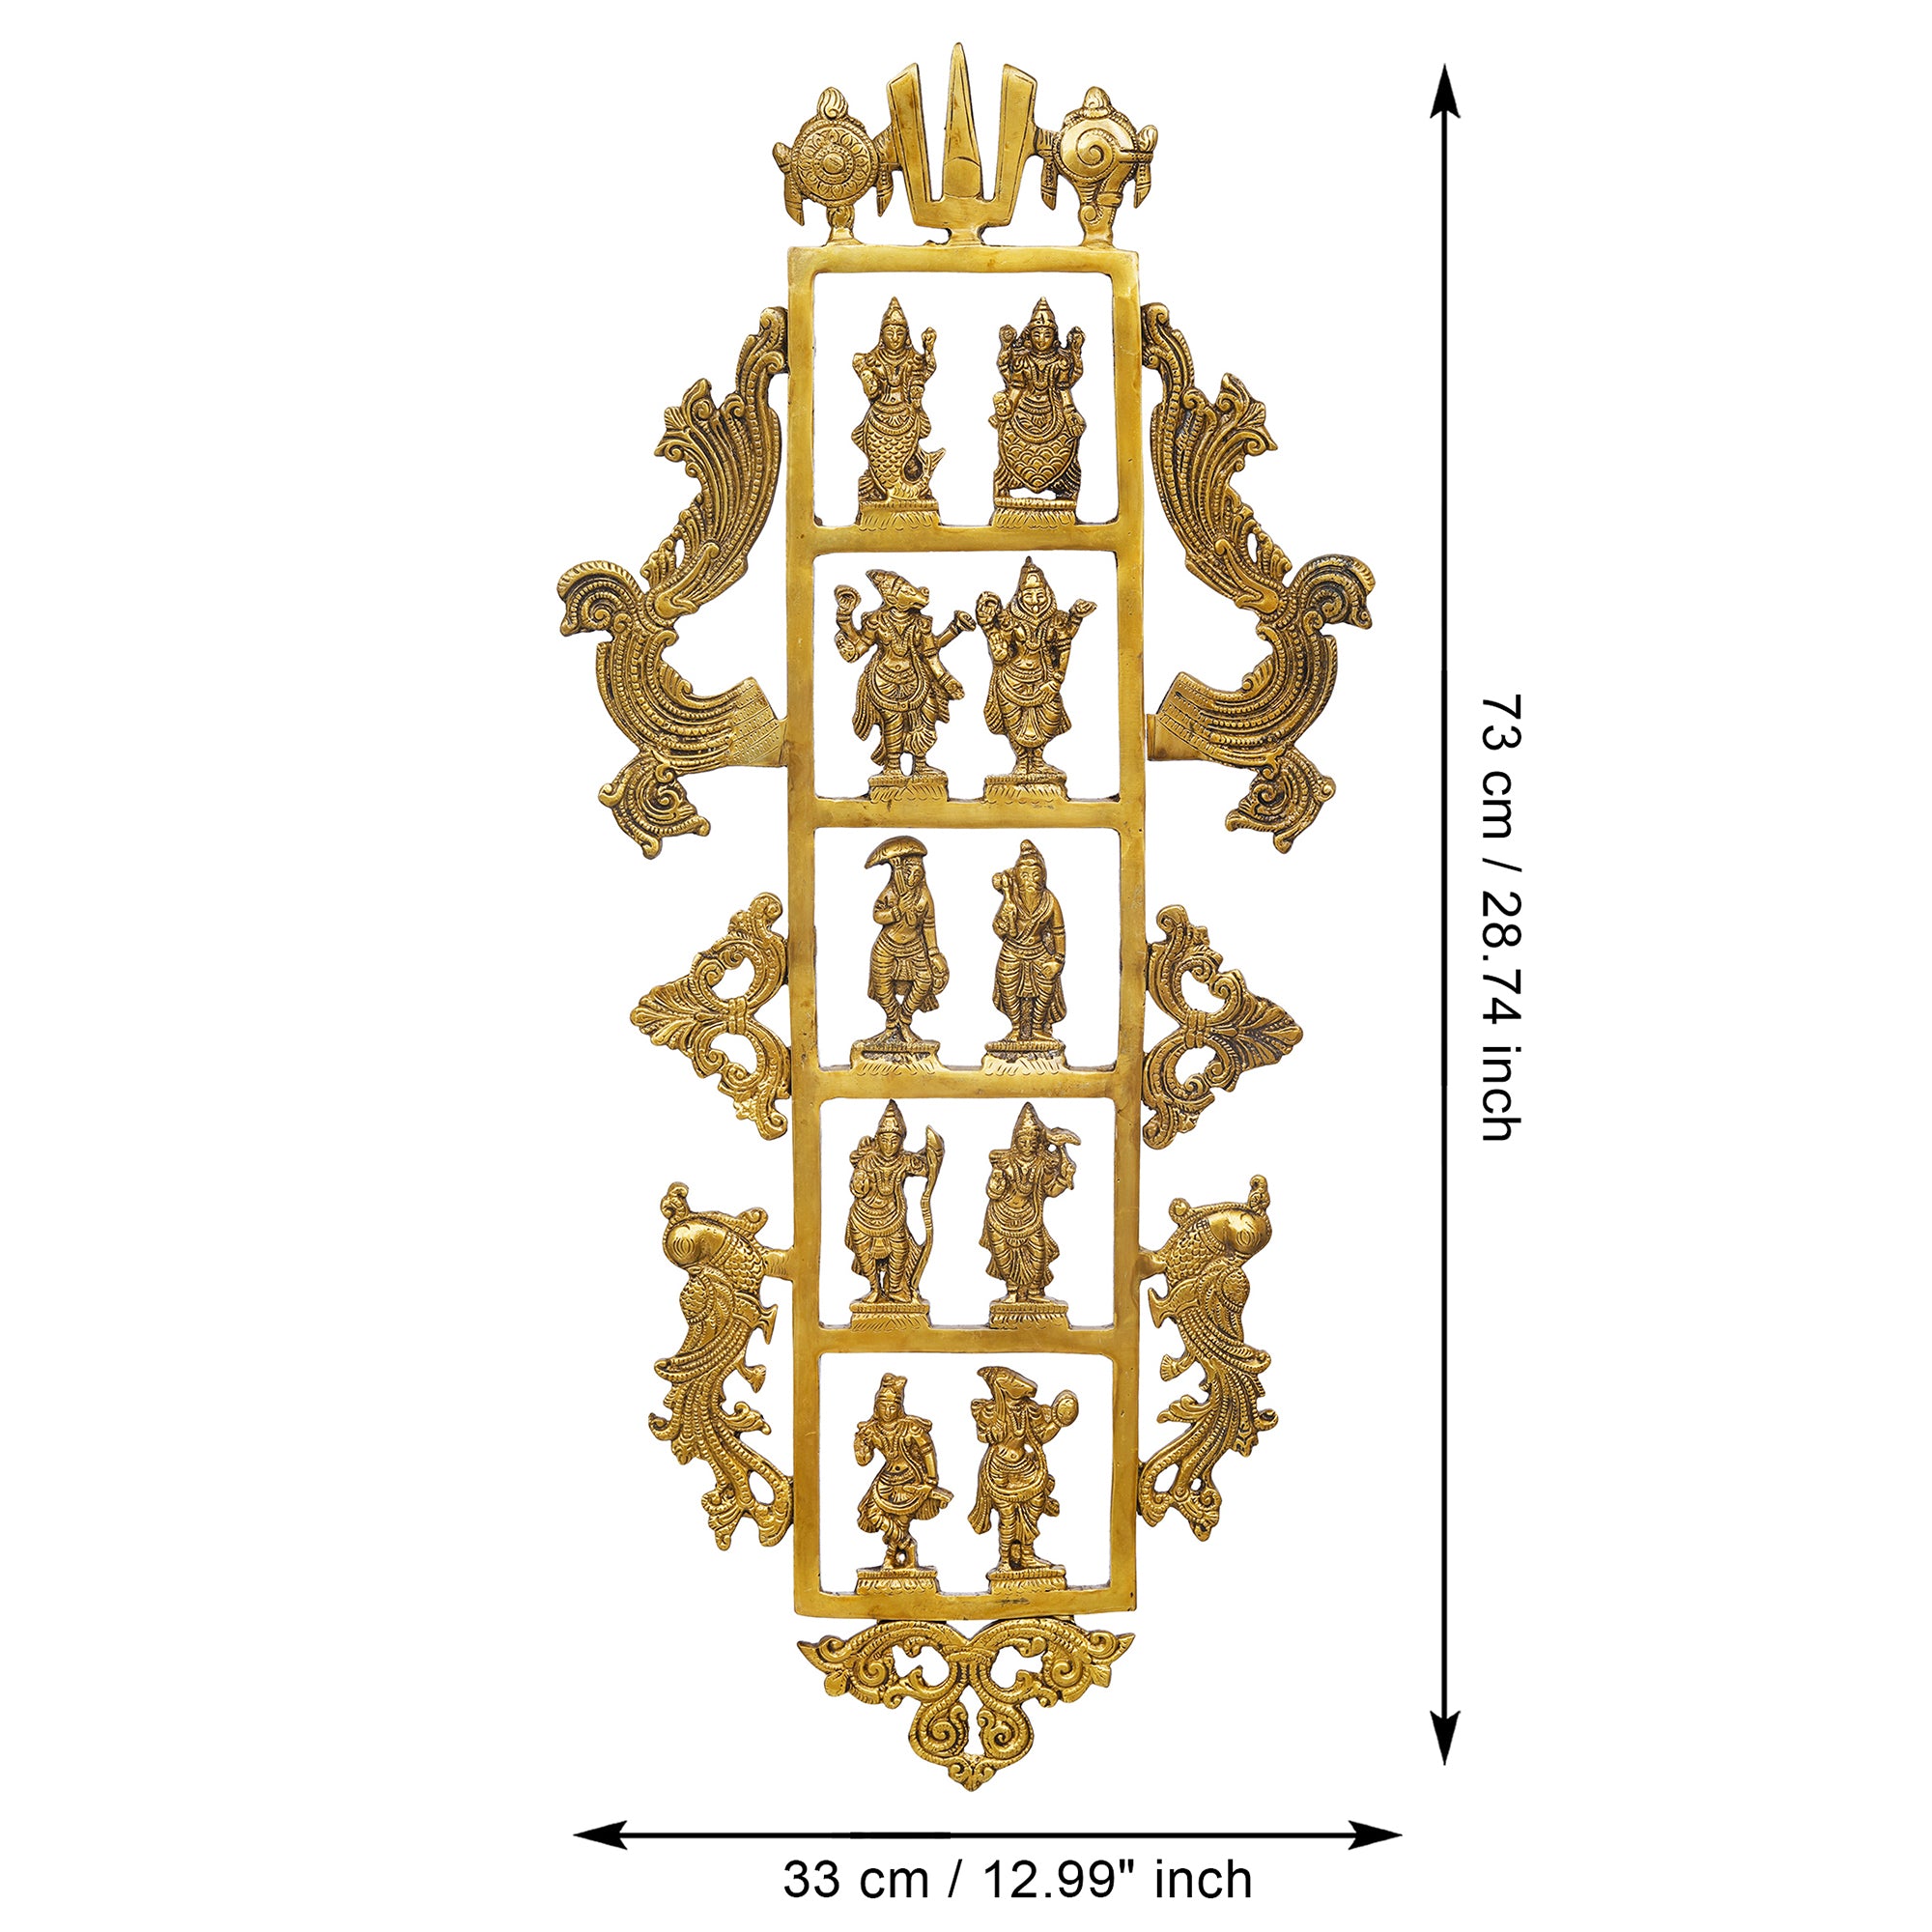 eCraftIndia Golden Brass Lord Vishnu Dashavatara - Ten Incarnations of Vishnu Religious Wall Hanging 3